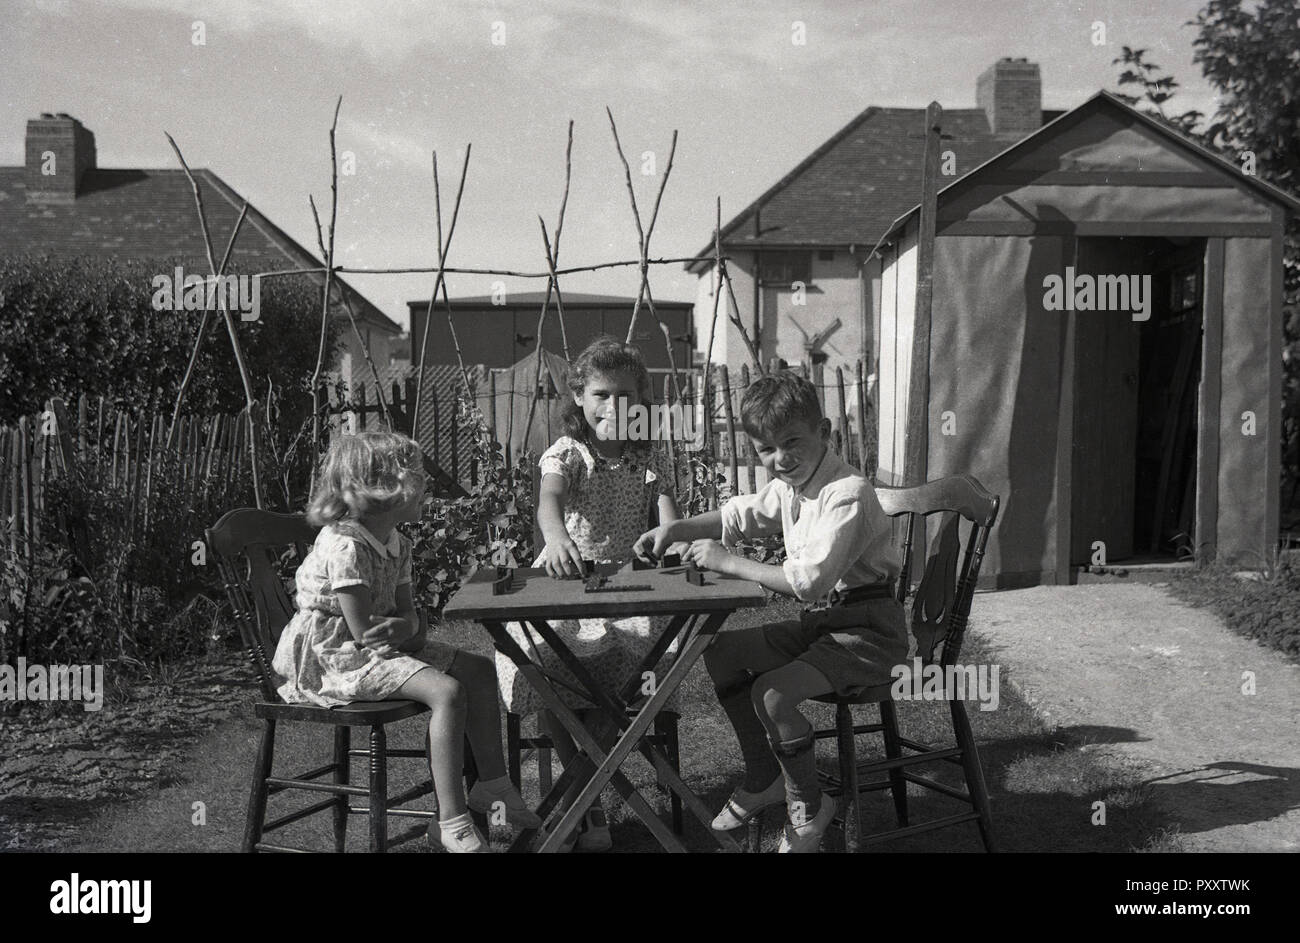 1950, historische, drei junge Kinder zusammen draußen im Garten sitzen spielen Domino an einem Tisch, England, UK. Stockfoto